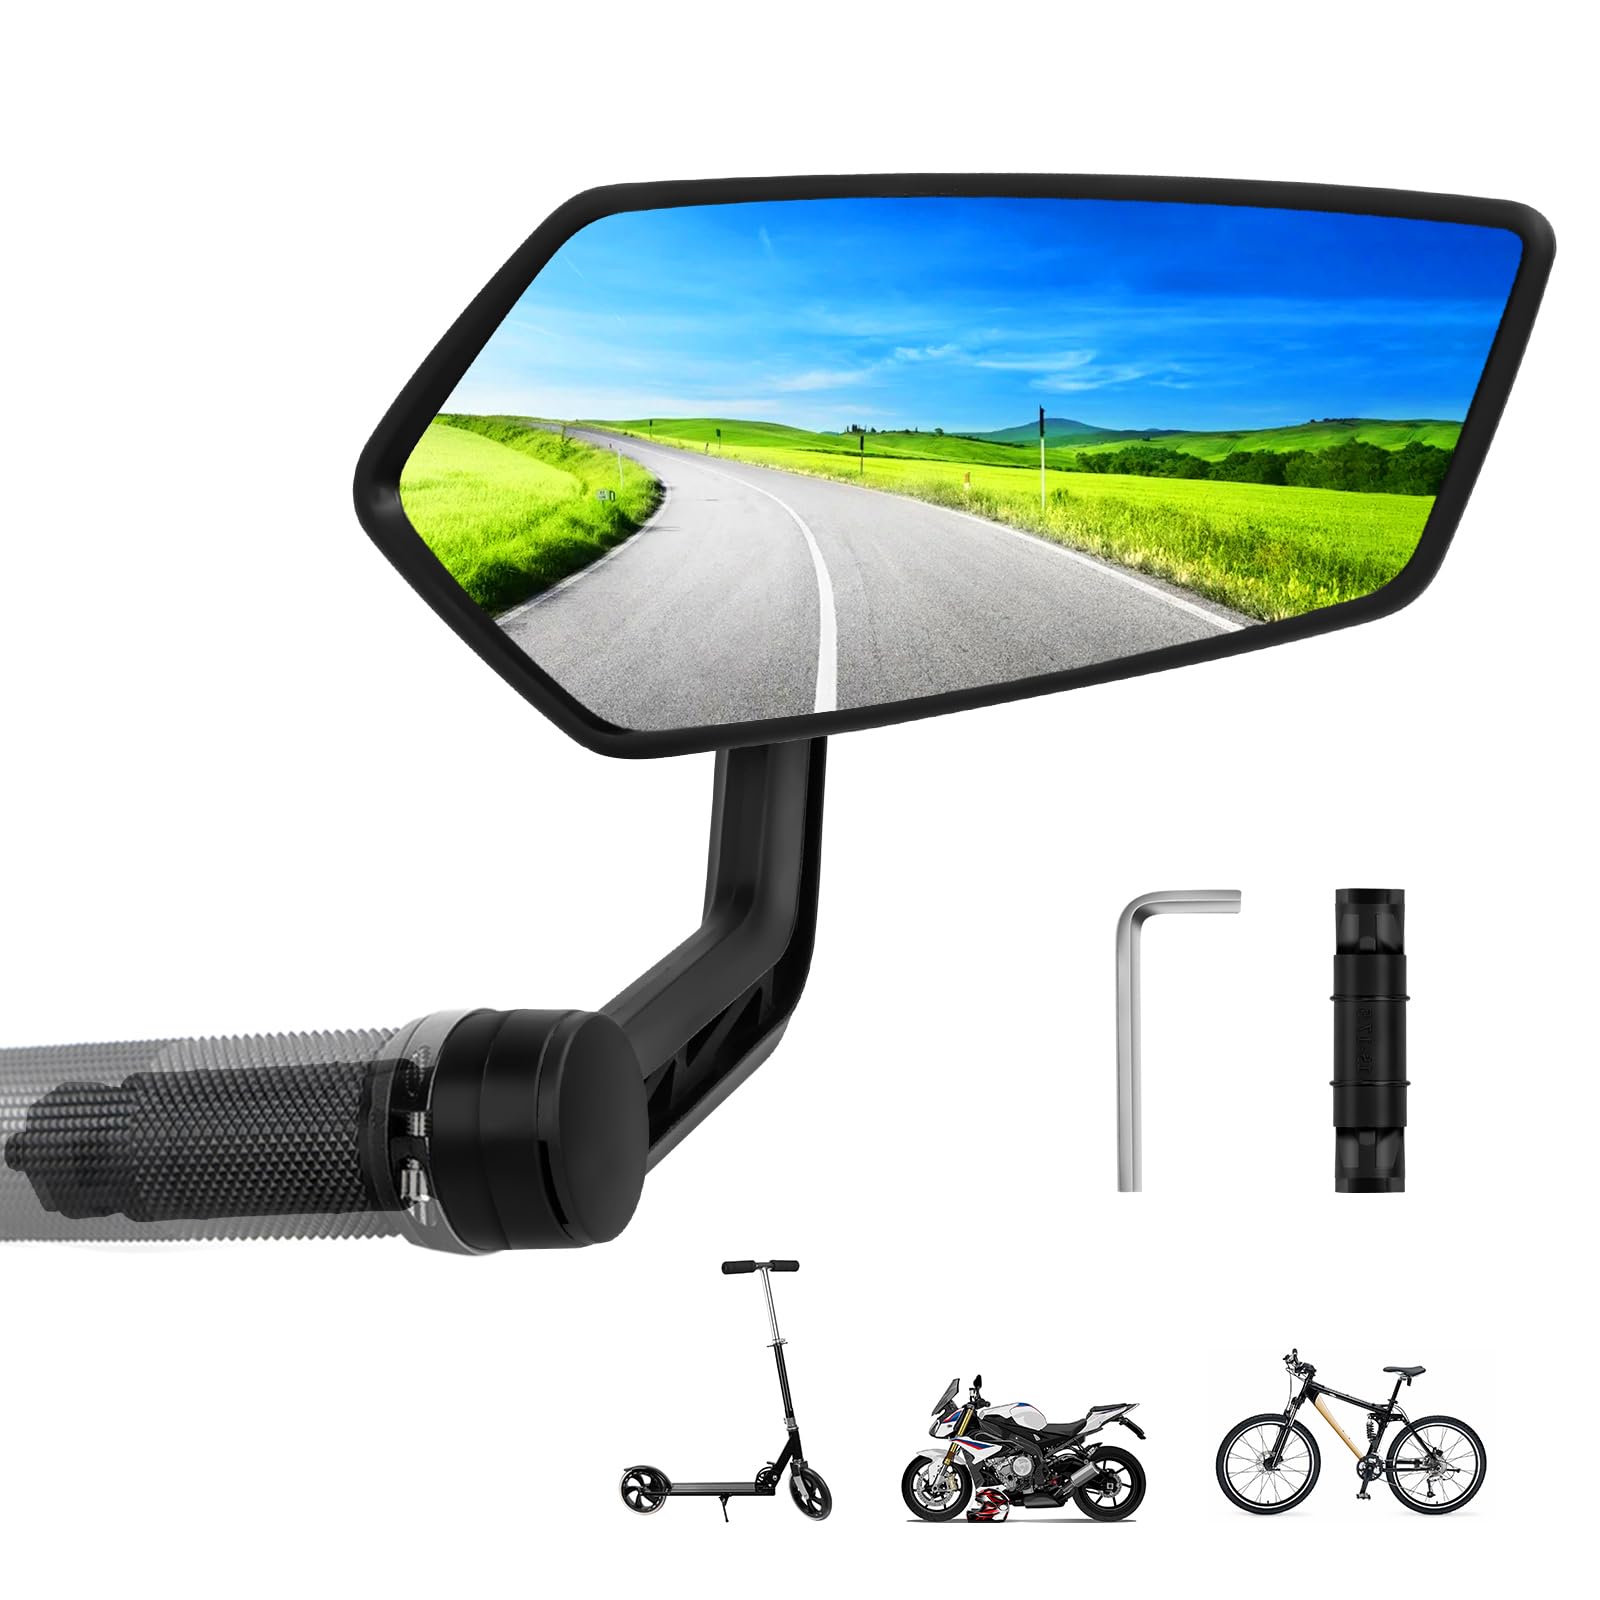 Fahrradspiegel für E-Bike Links, Fahrradspiegel für Lenker, Fahradspiegel Lenker Links Ebike, HD Schlagfestes Echtglas Spiegelfläche, für E-Bike Universal 15-20mm (Rechts Lenkerende) von LURICO